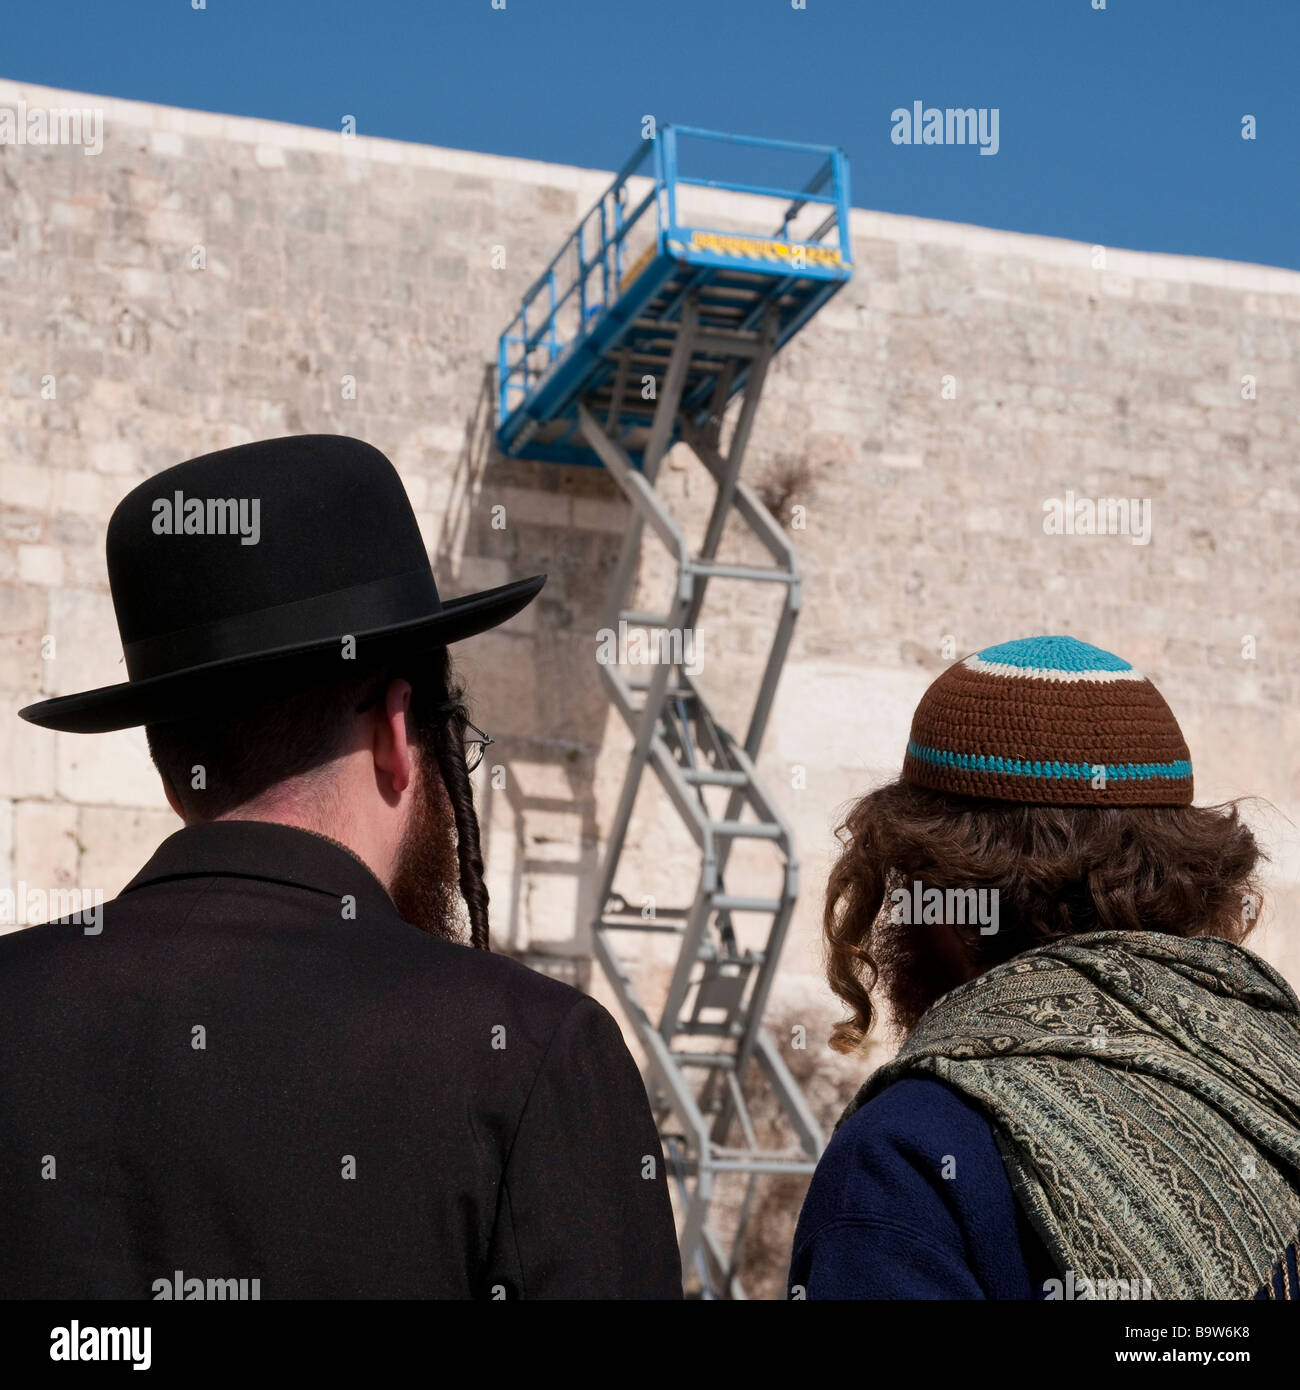 Israele Gerusalemme la città vecchia parete occidentale vicino a due ebrei ortodossi la visione di una piattaforma di riparazione Foto Stock